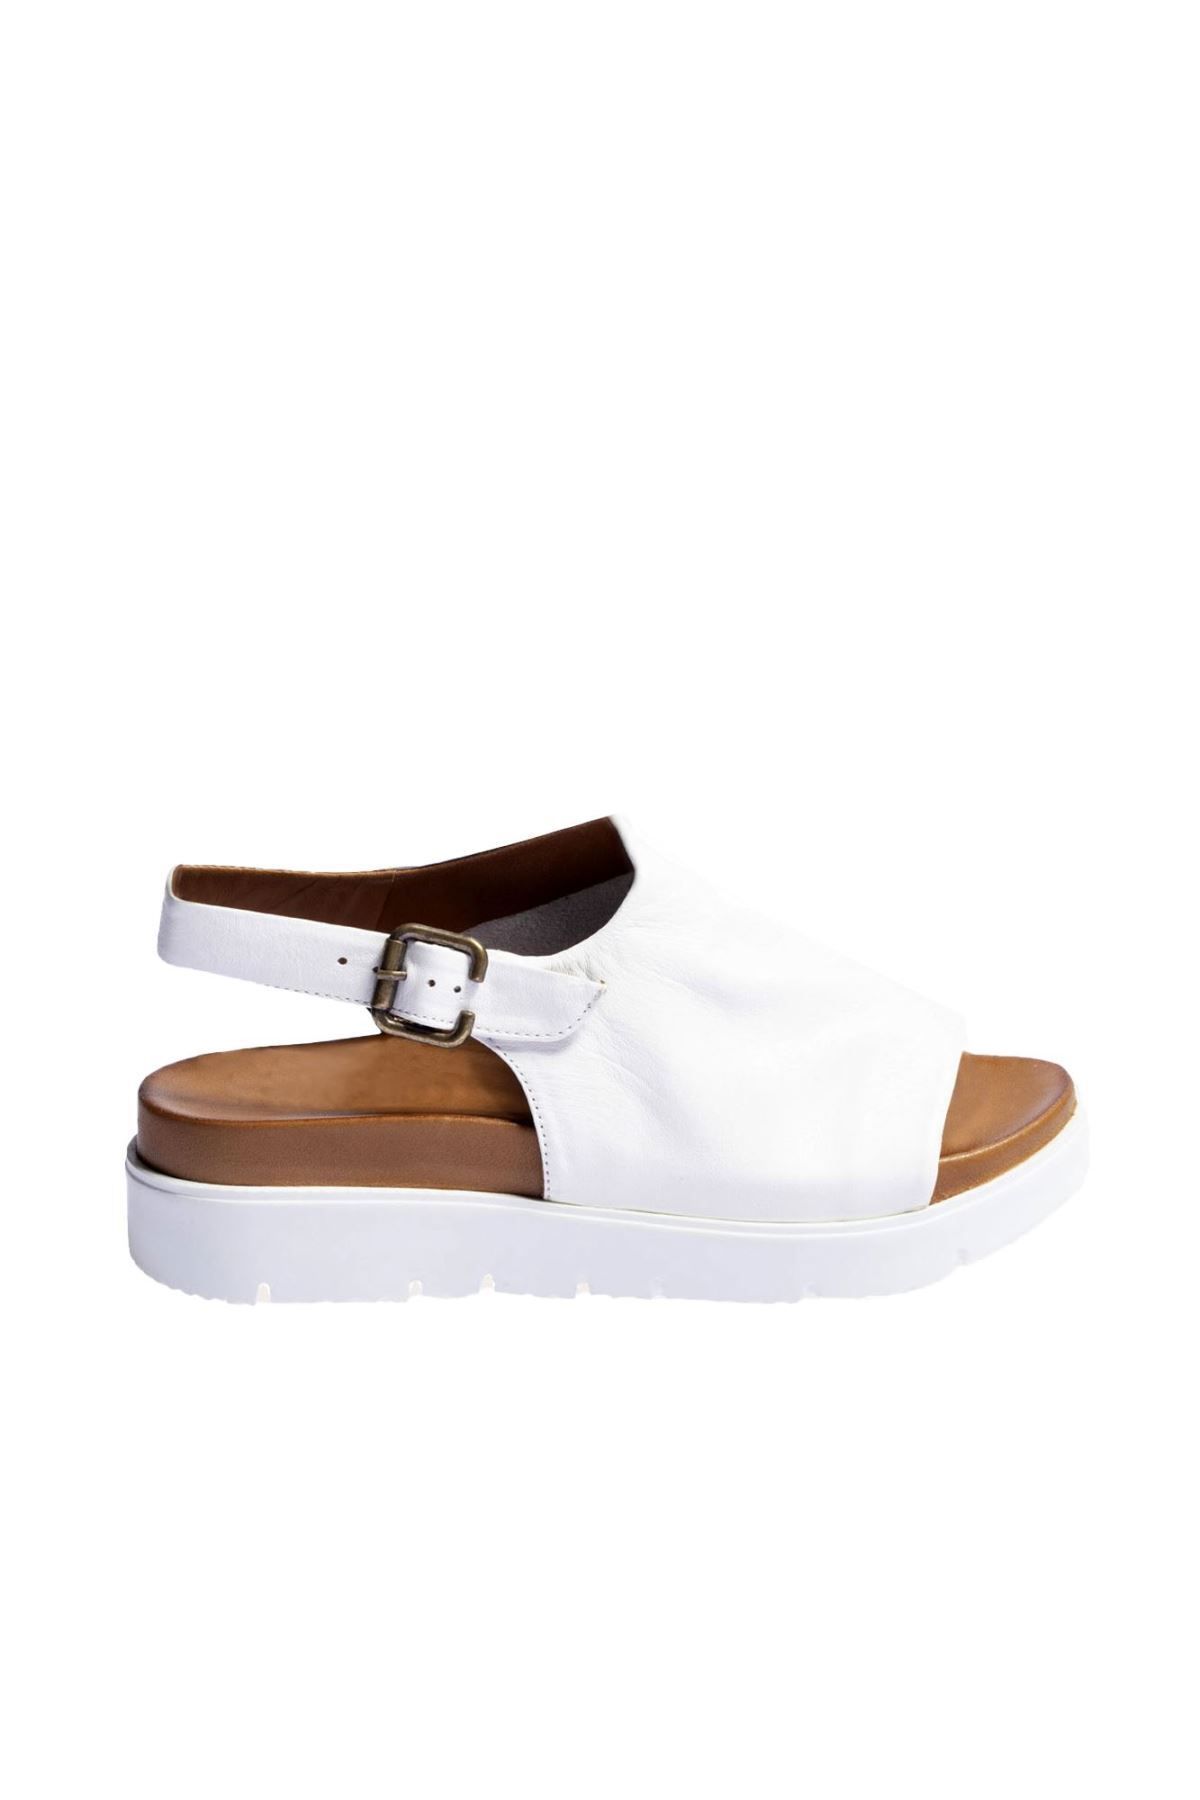 BUENO Shoes Beyaz Deri Kadın Dolgu Topuklu Sandalet